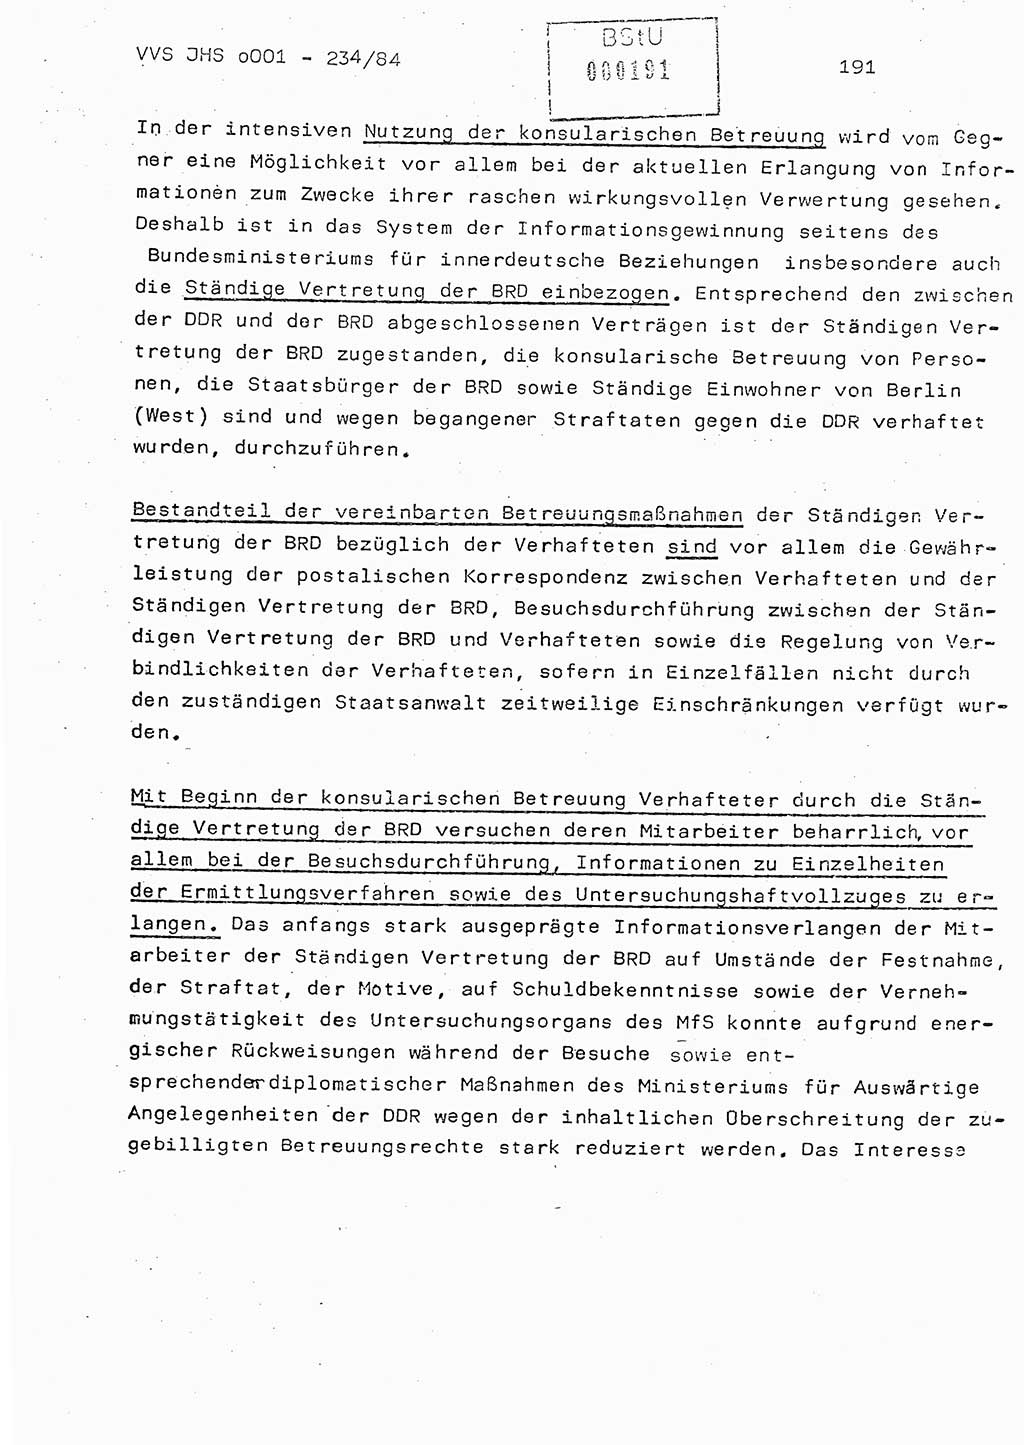 Dissertation Oberst Siegfried Rataizick (Abt. ⅩⅣ), Oberstleutnant Volkmar Heinz (Abt. ⅩⅣ), Oberstleutnant Werner Stein (HA Ⅸ), Hauptmann Heinz Conrad (JHS), Ministerium für Staatssicherheit (MfS) [Deutsche Demokratische Republik (DDR)], Juristische Hochschule (JHS), Vertrauliche Verschlußsache (VVS) o001-234/84, Potsdam 1984, Seite 191 (Diss. MfS DDR JHS VVS o001-234/84 1984, S. 191)